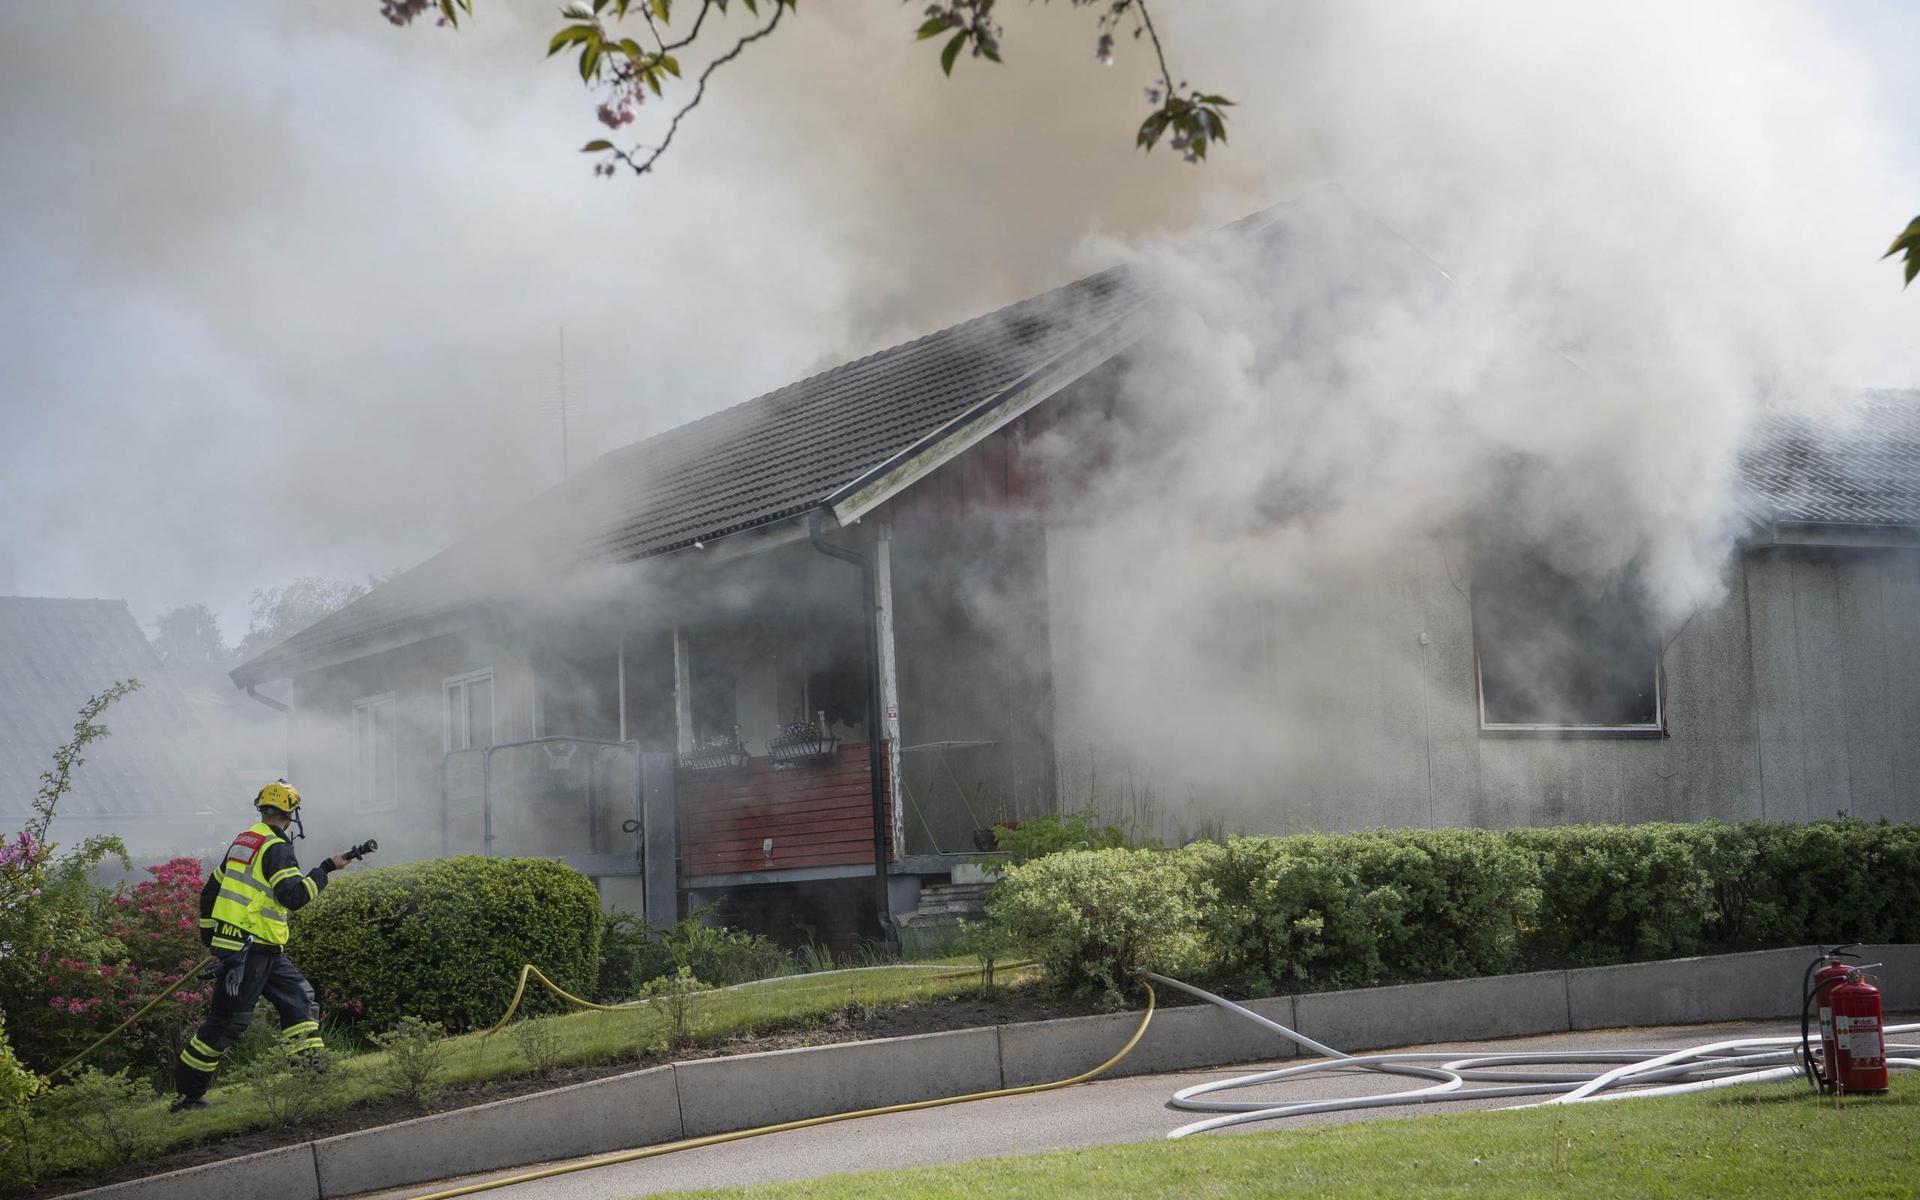 Två personer bor i huset som brann, varav en var hemma när branden bröt ut men kunde ta sig ut.